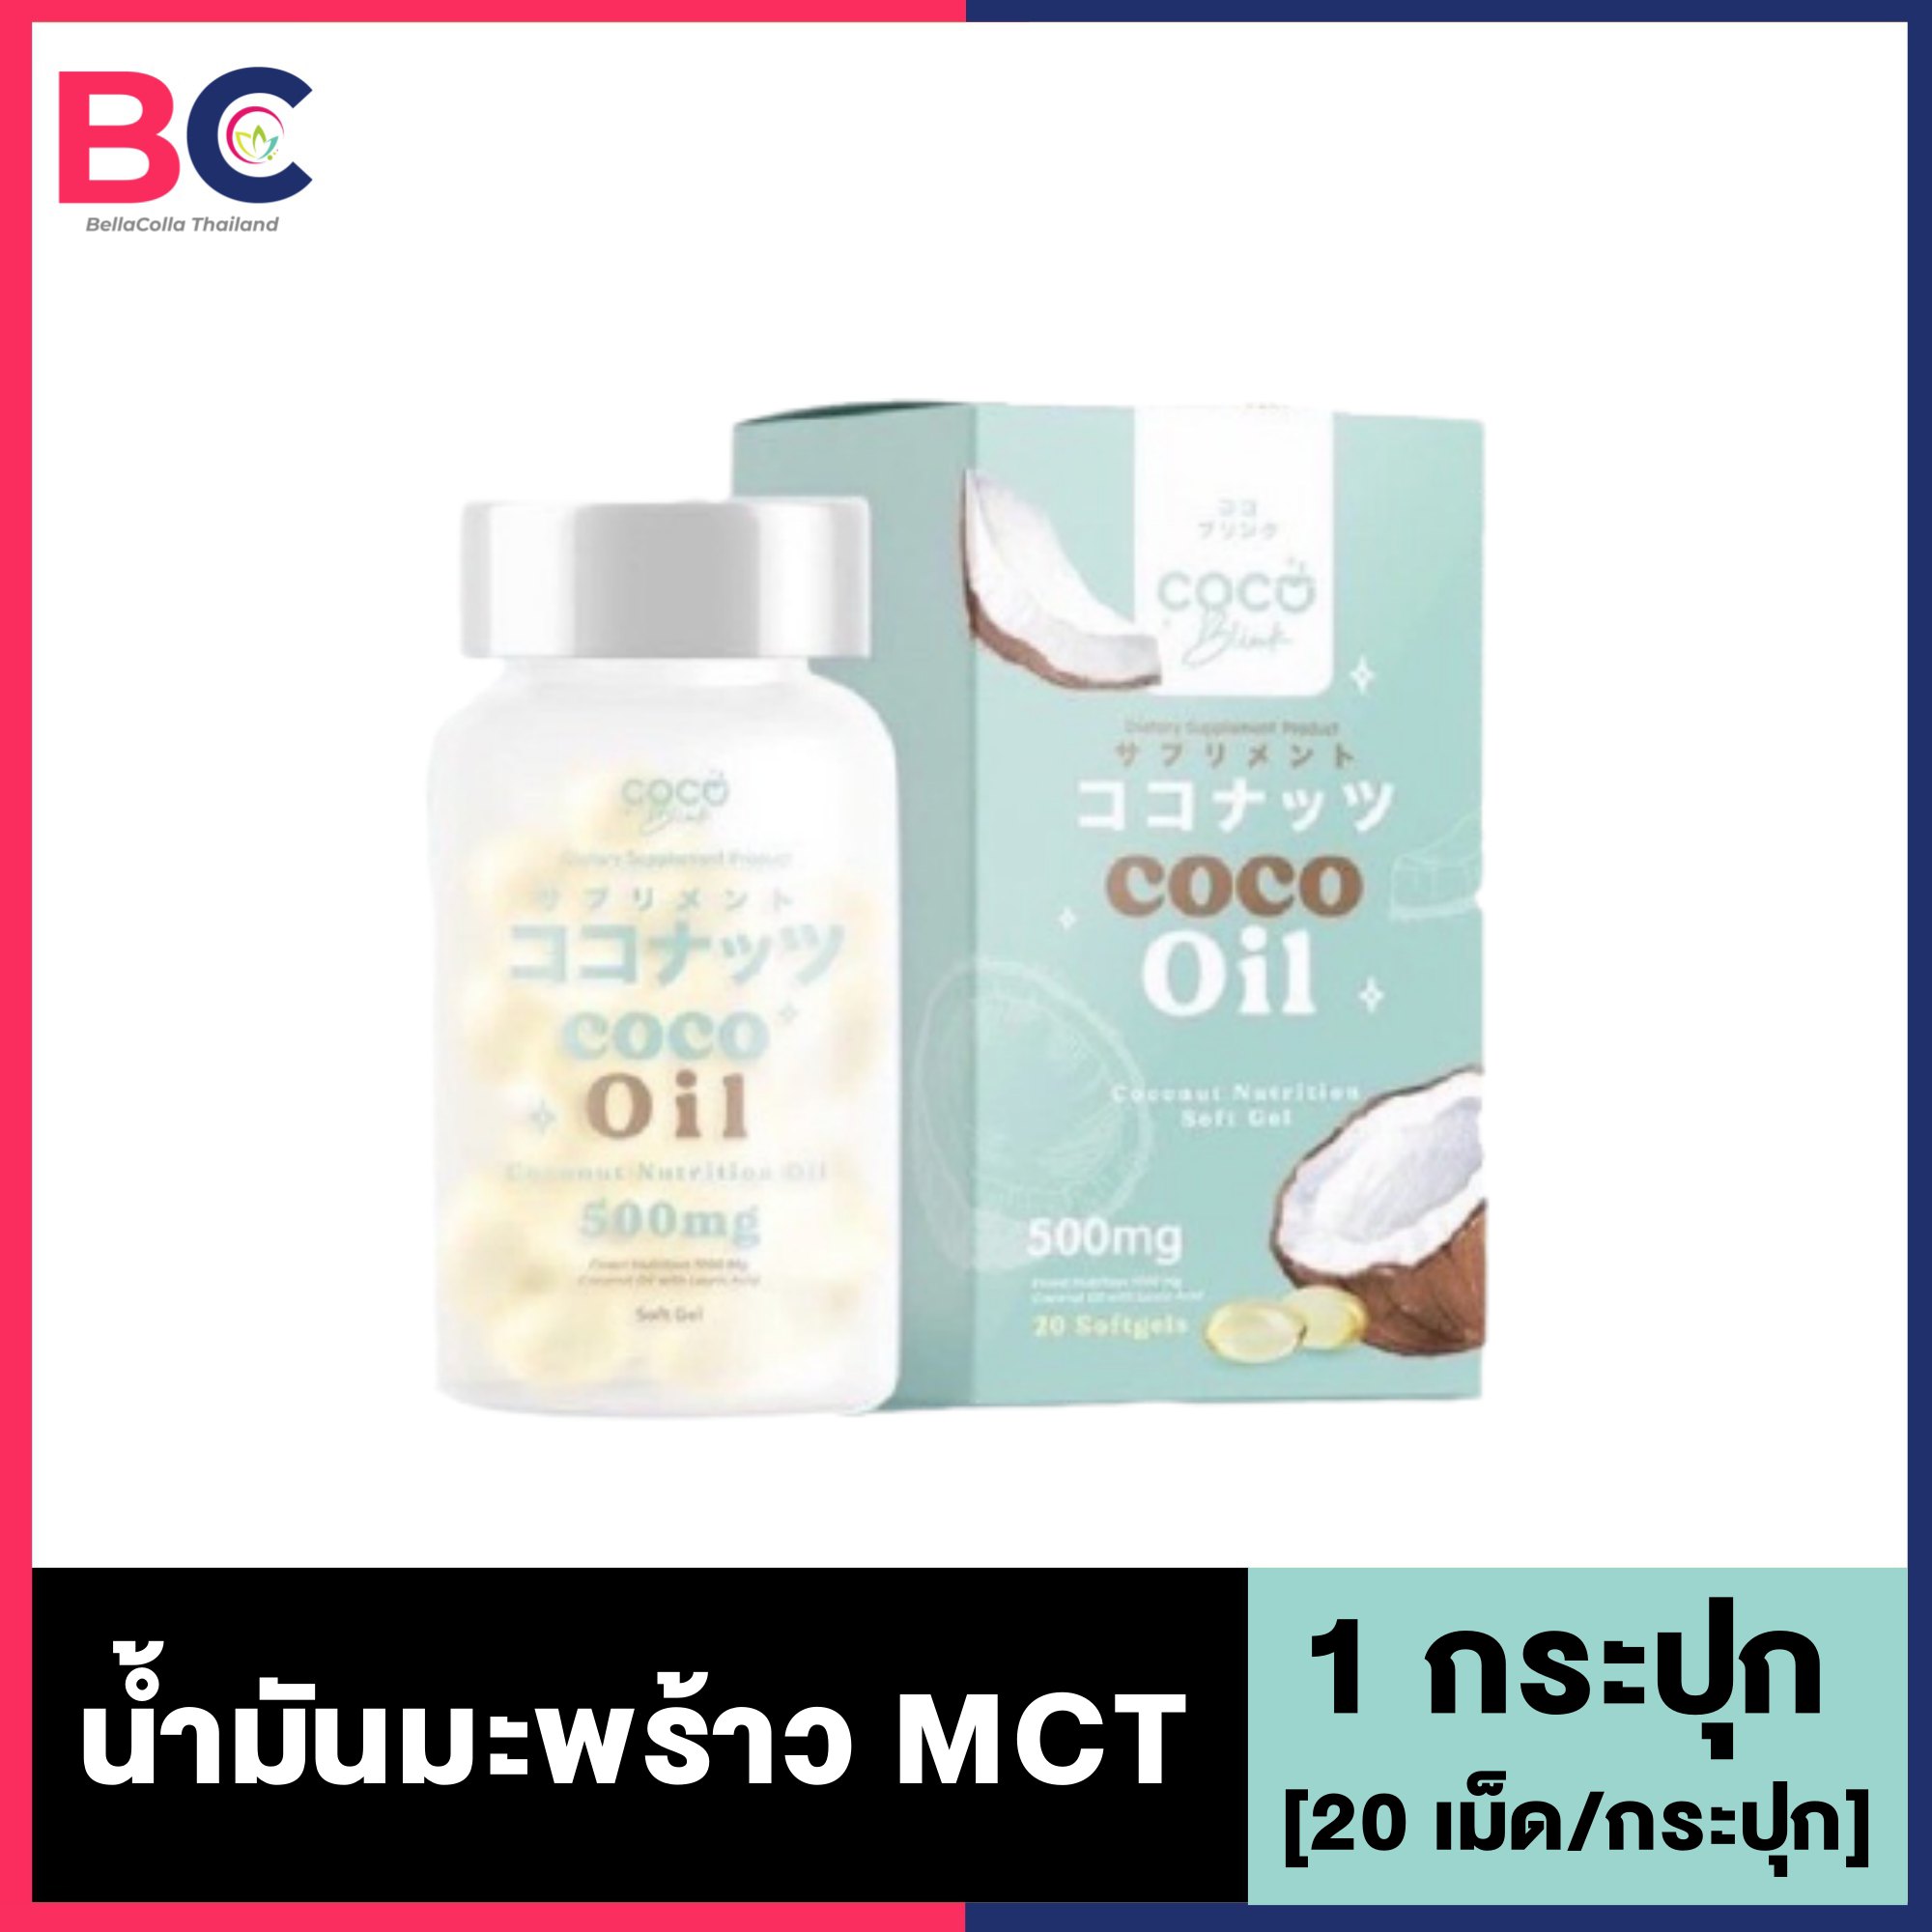 Coco blink Coco Oil [1 กระปุก] [20 เม็ด/กระปุก] น้ำมันมะพร้าว mct BC สุขภาพ